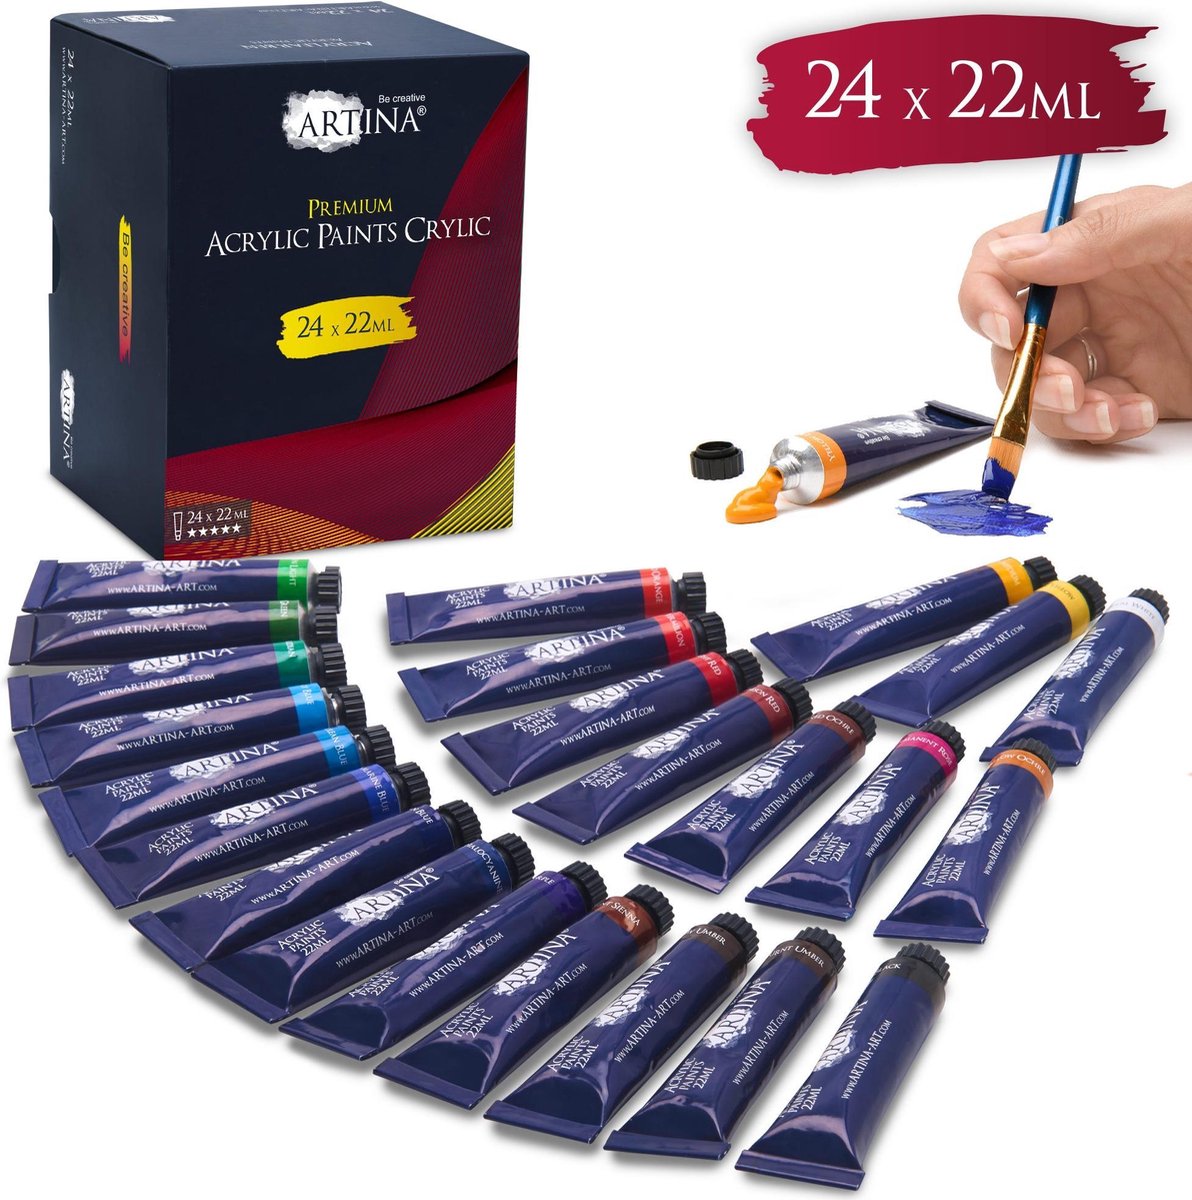 Artina Acrylverf Set 24 Tubes à 22ml - Premium Acrylverfen - Acrylverfset voor Schilderen voor Schilderen van Schilderijen op Schildersdoeken